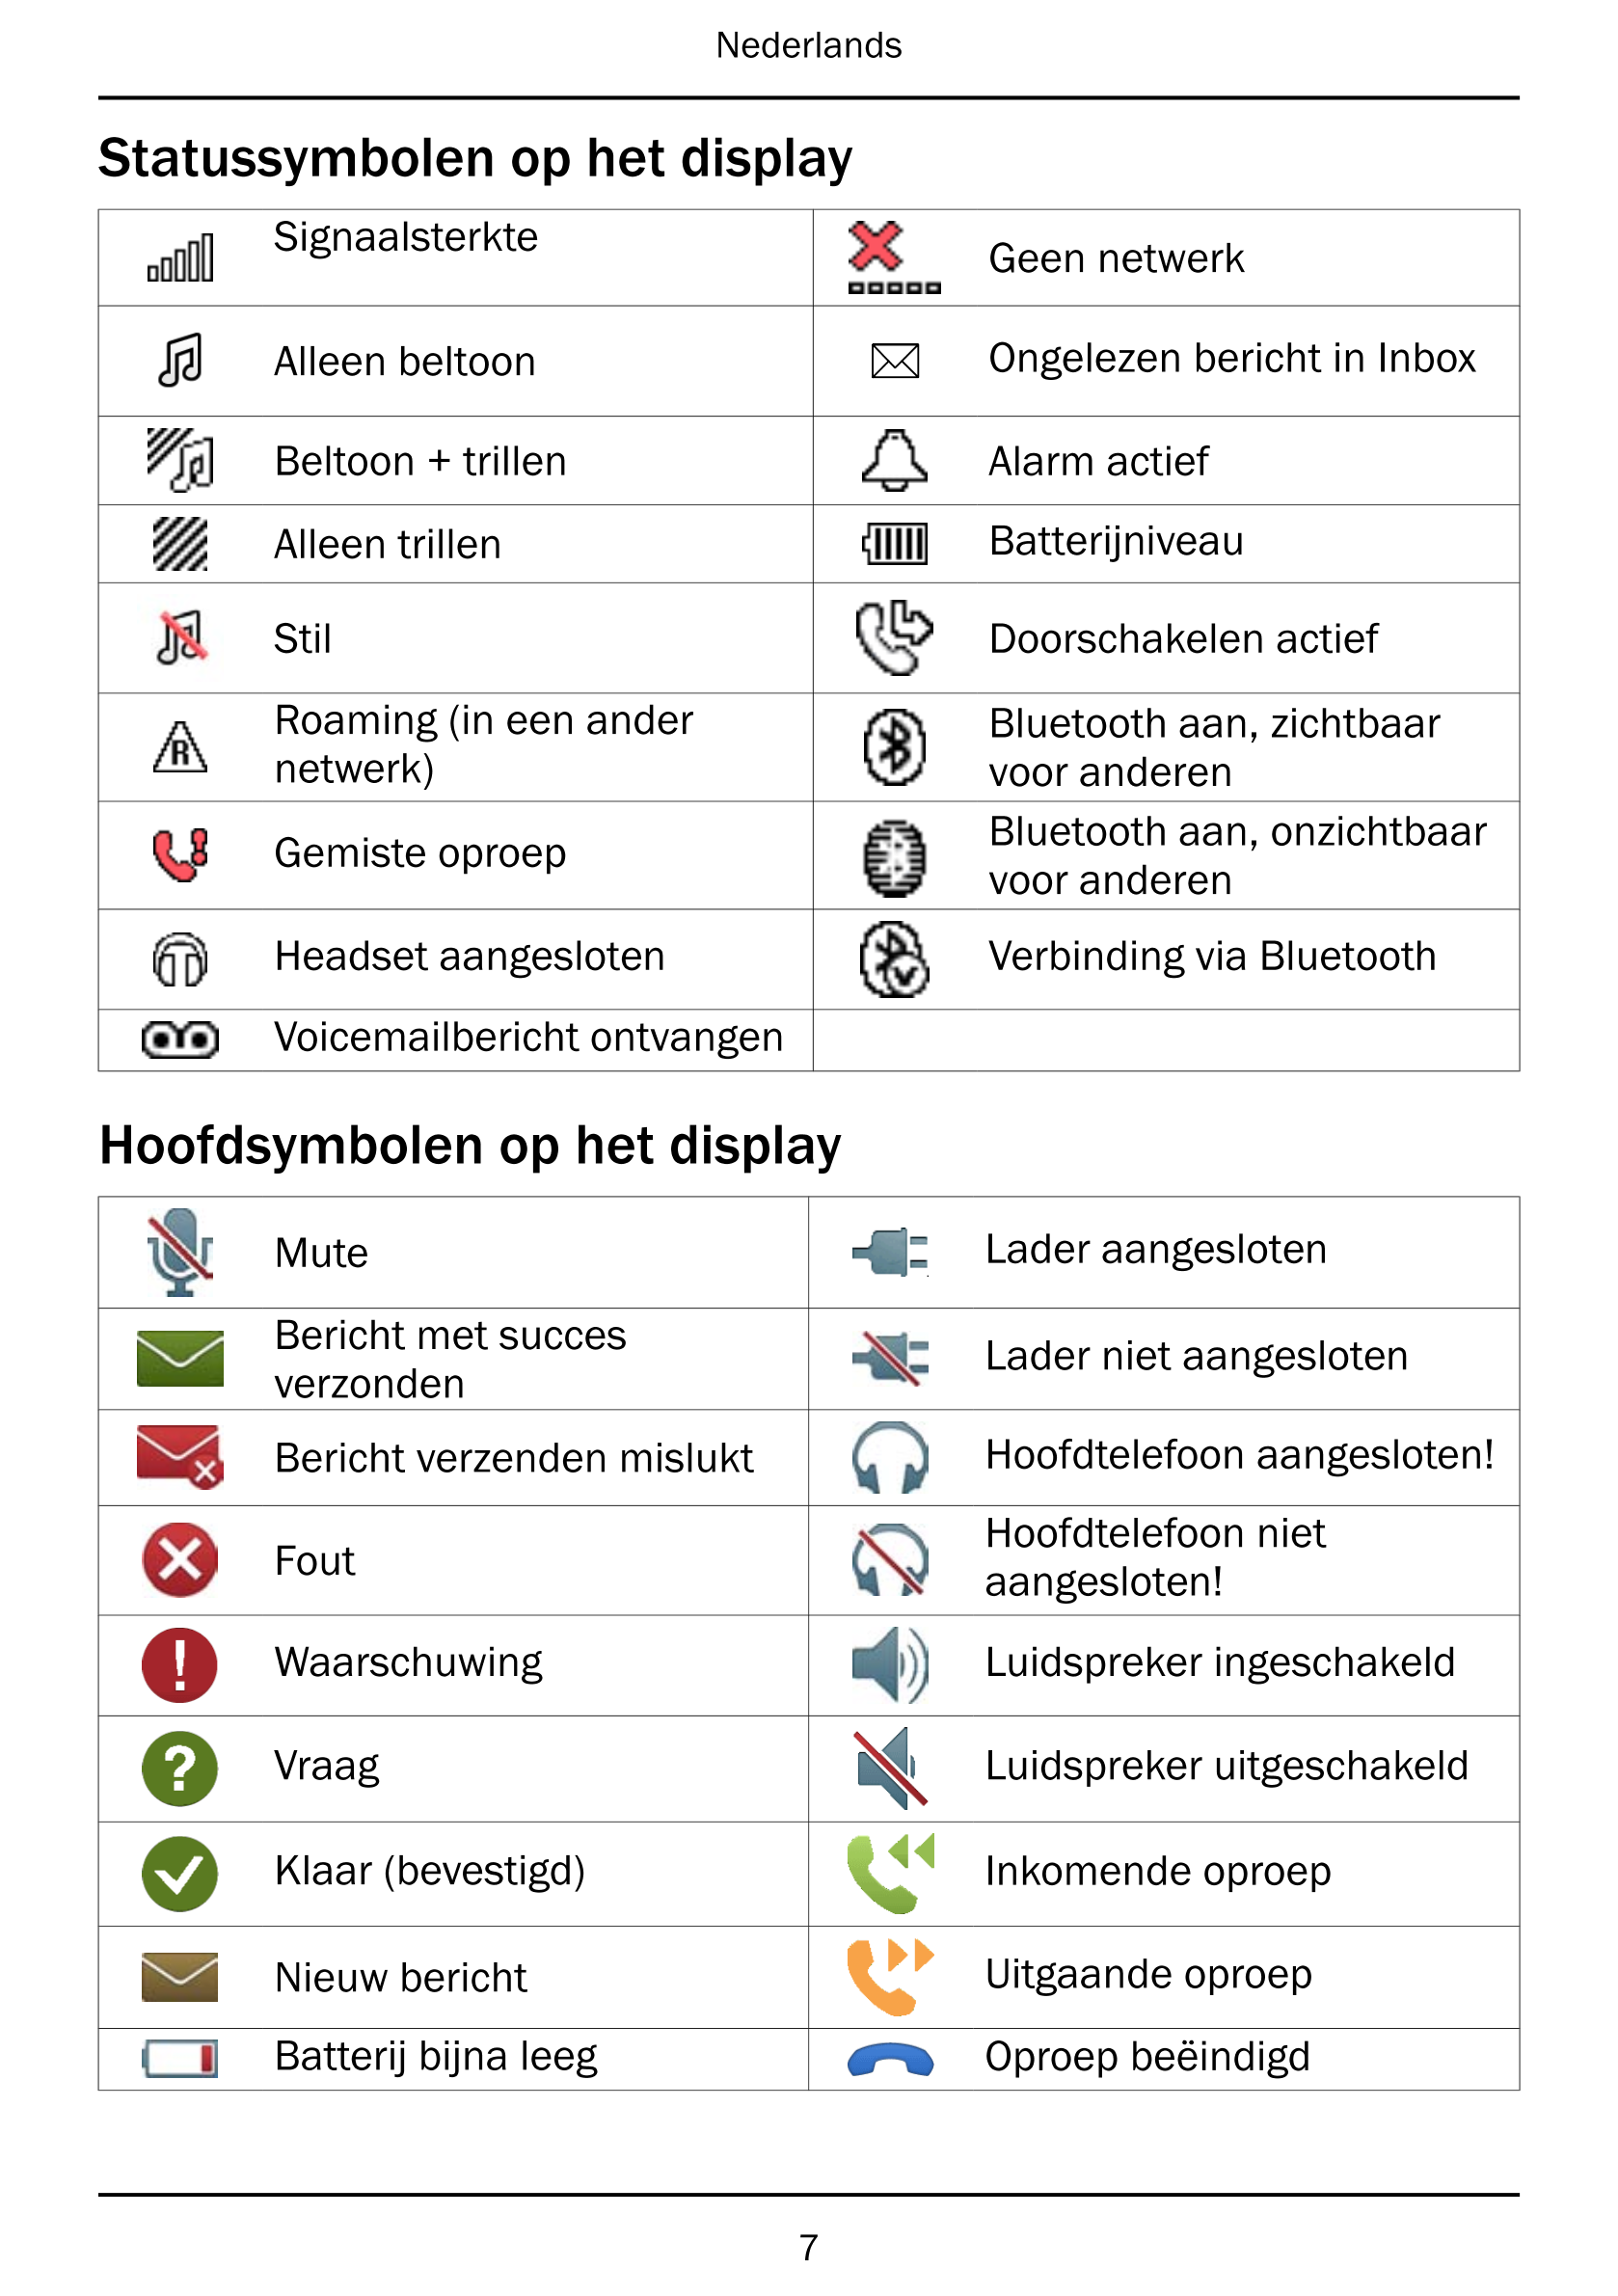 Nederlands
Statussymbolen op het display
Signaalsterkte Geen netwerk
Alleen beltoon 5 Ongelezen bericht in Inbox
Beltoon + trill